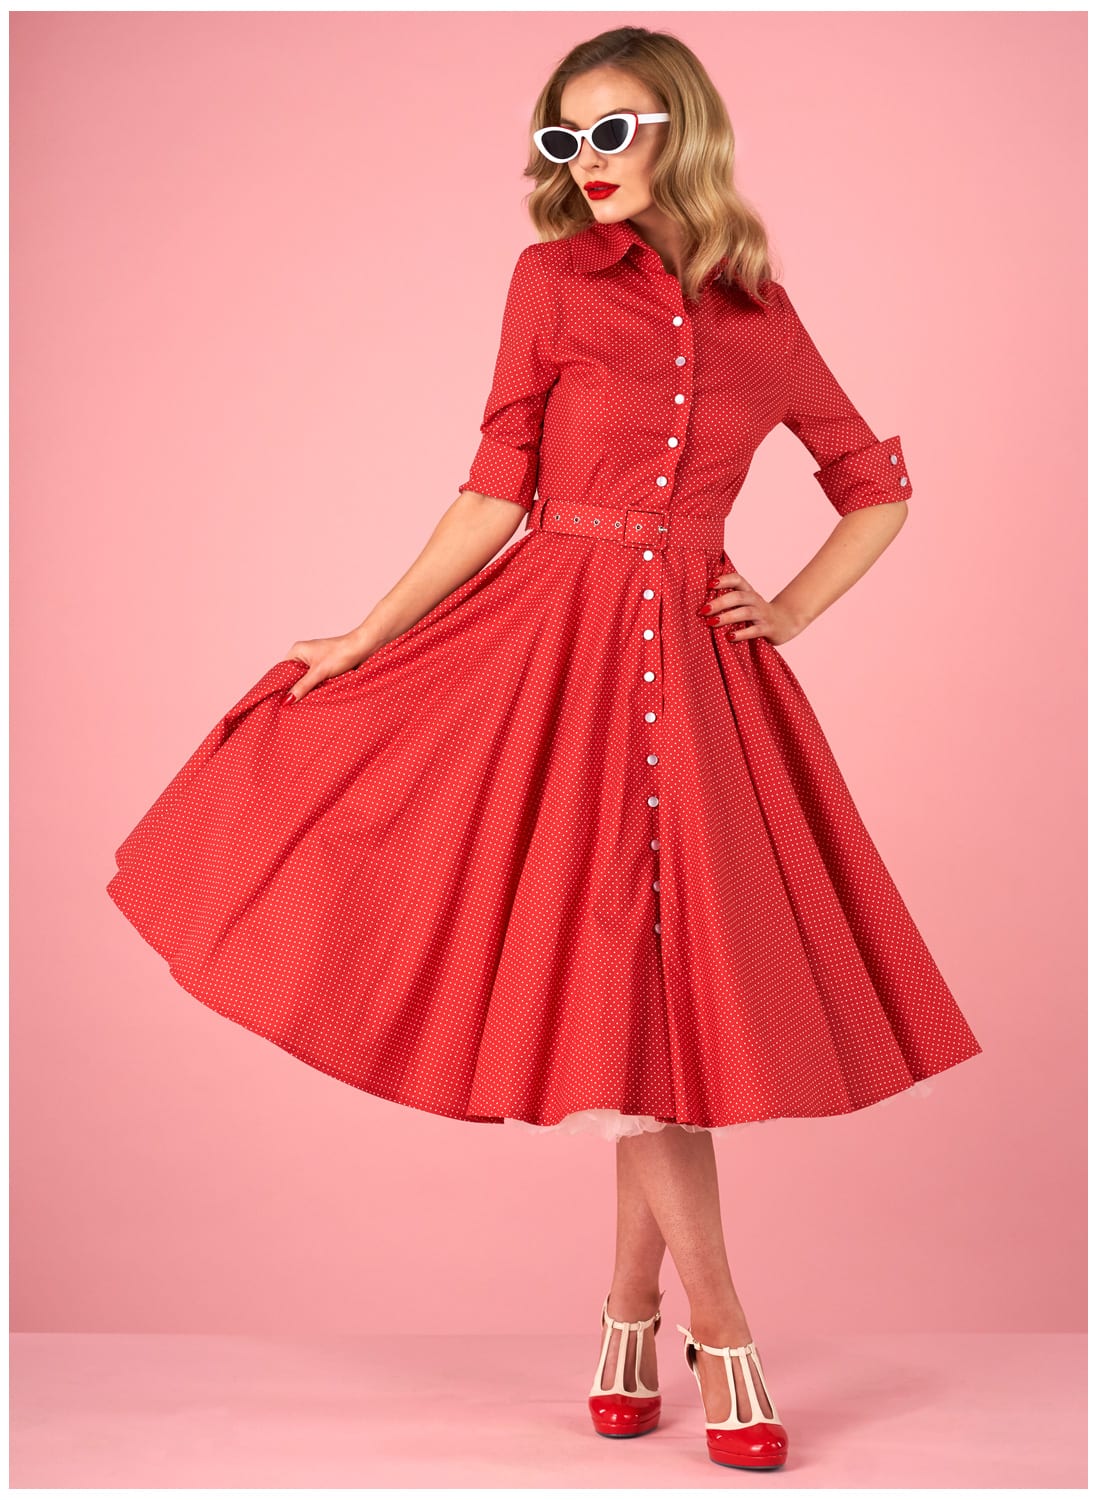 vintage polka dot dress uk